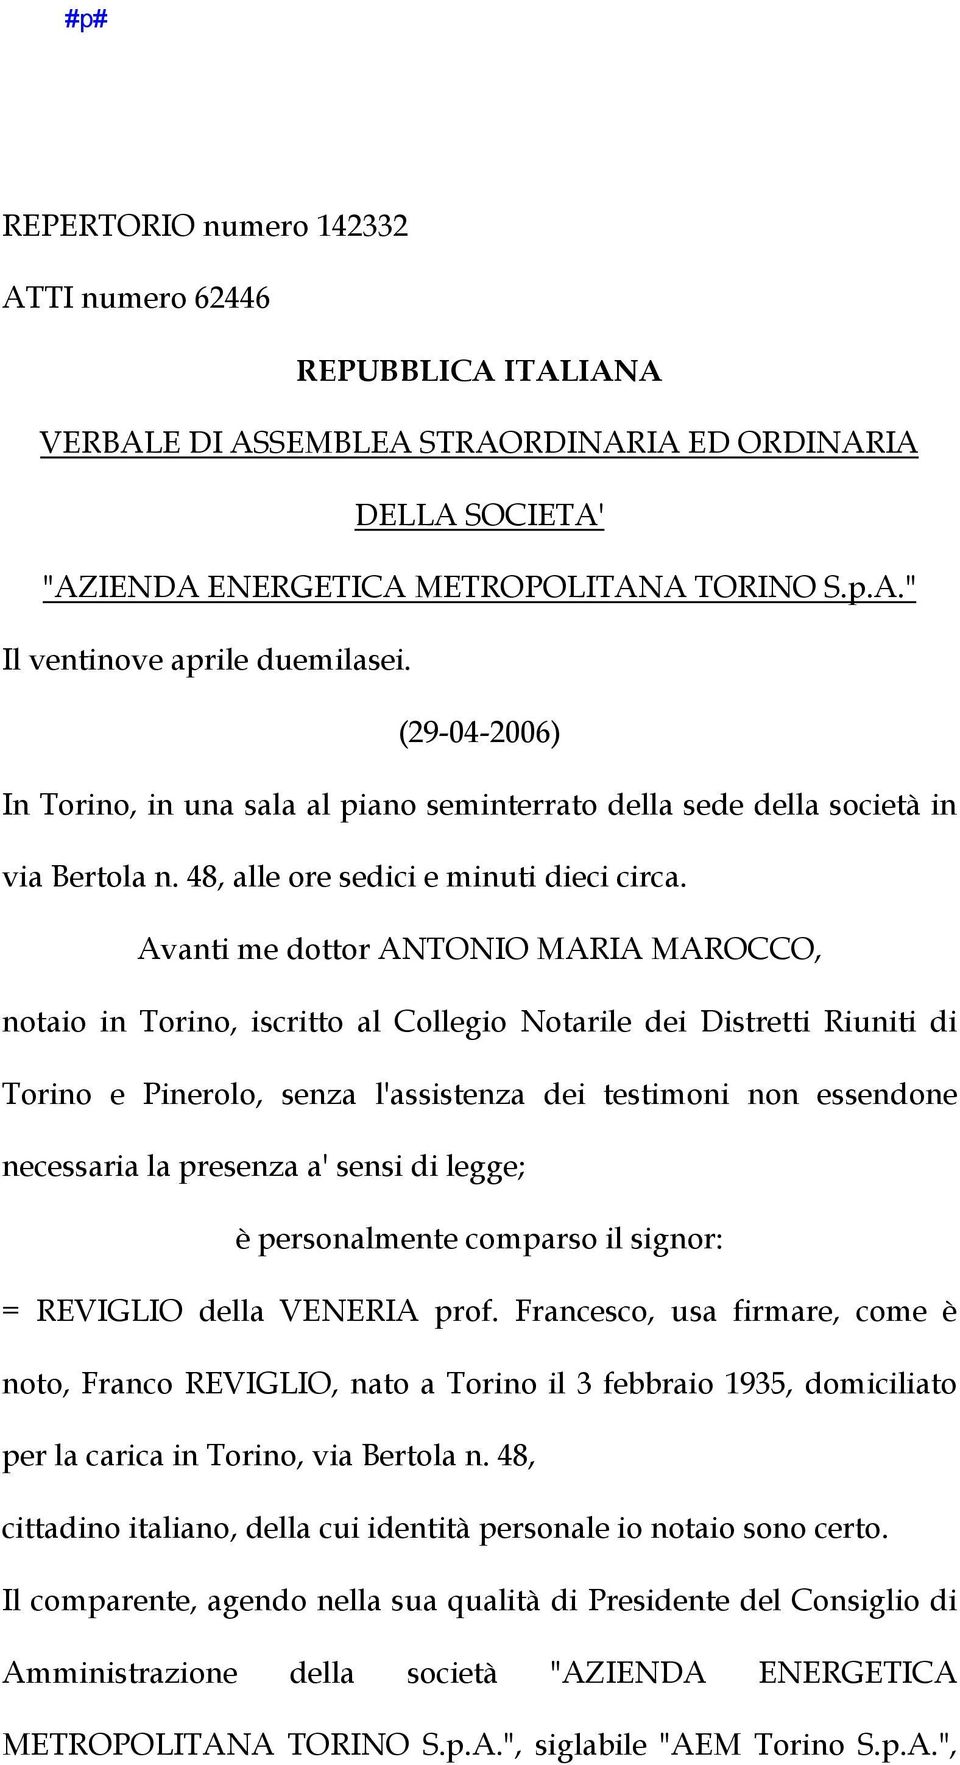 Avanti me dottor ANTONIO MARIA MAROCCO, notaio in Torino, iscritto al Collegio Notarile dei Distretti Riuniti di Torino e Pinerolo, senza l'assistenza dei testimoni non essendone necessaria la